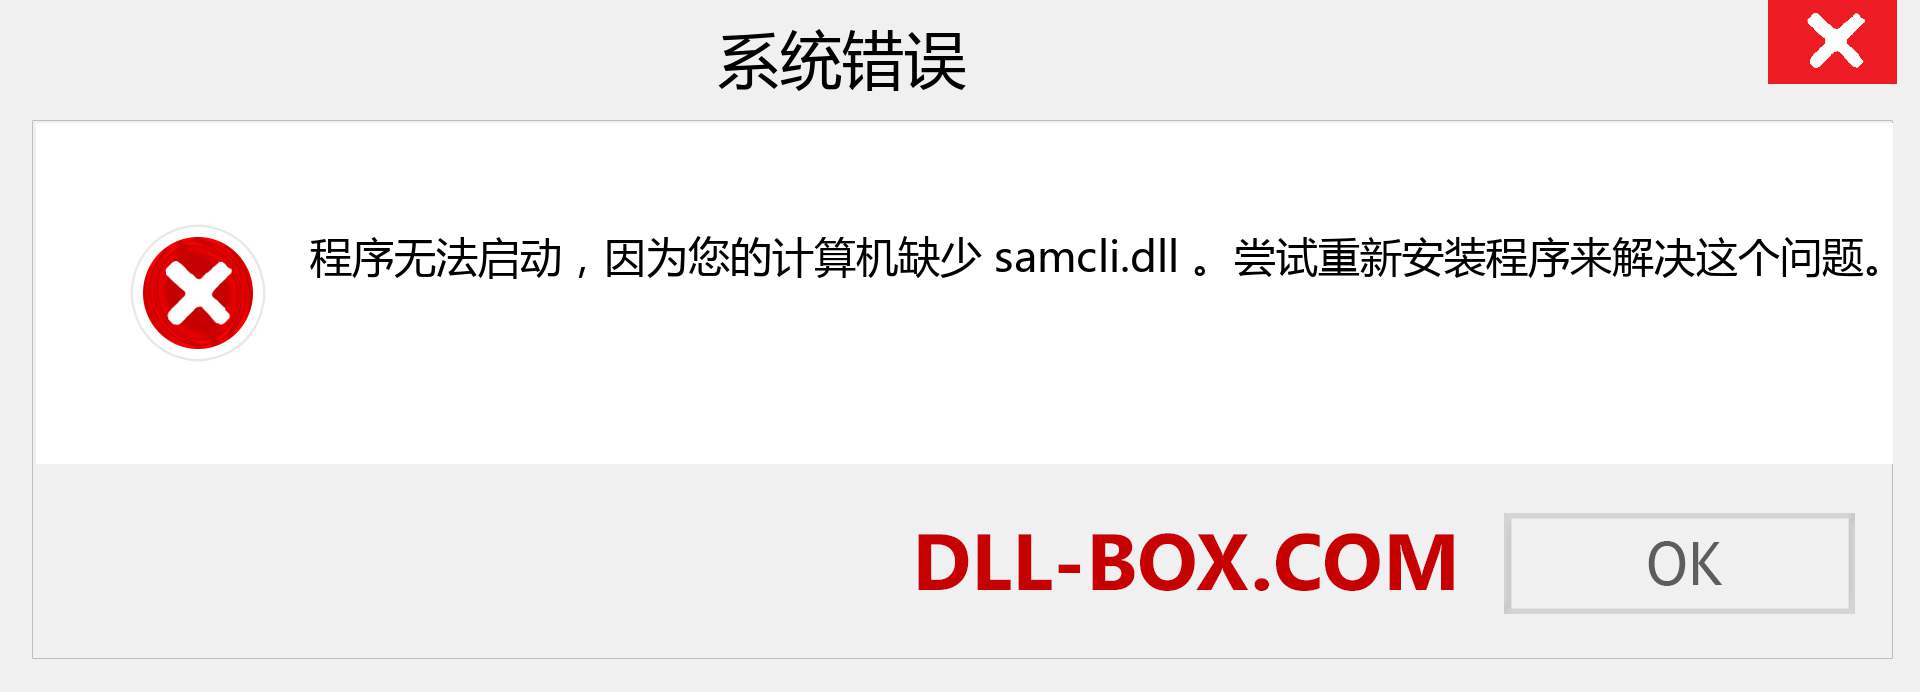 samcli.dll 文件丢失？。 适用于 Windows 7、8、10 的下载 - 修复 Windows、照片、图像上的 samcli dll 丢失错误